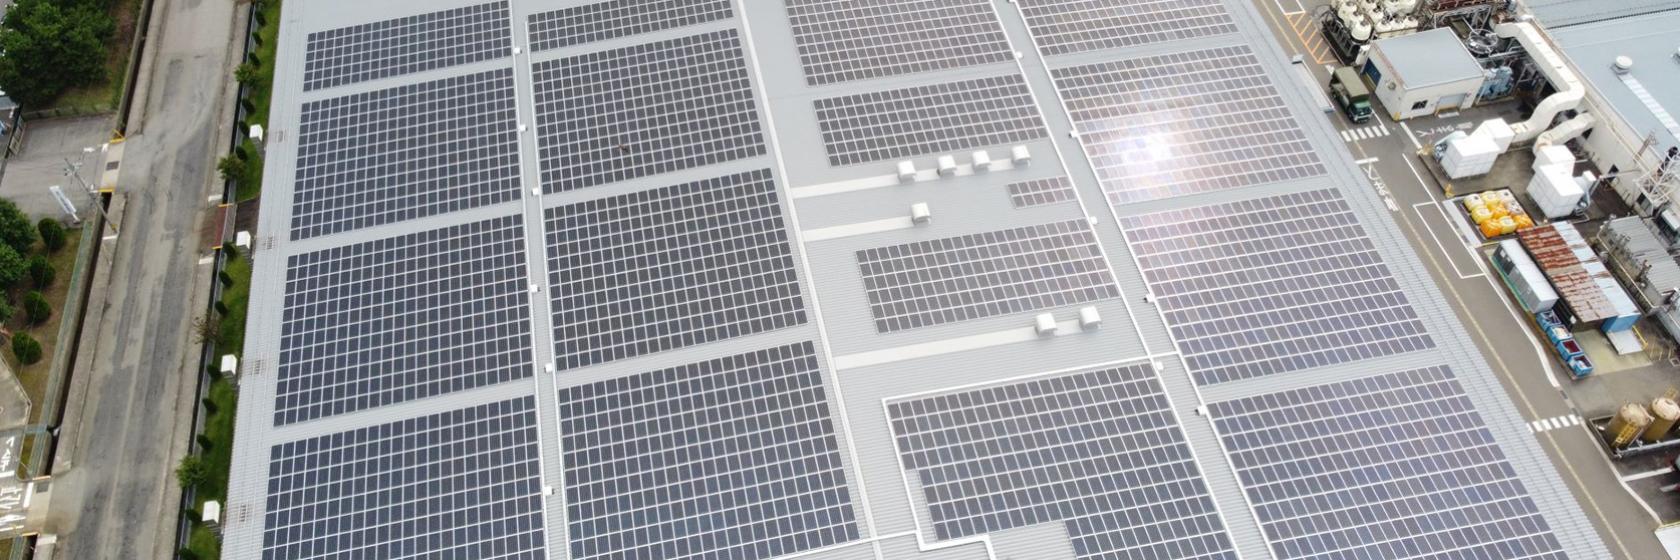 工場の屋根に設置されたソーラーパネル。積極的な省エネと創エネ技術で、2050年カーボンニュートラルの実現を目指す。